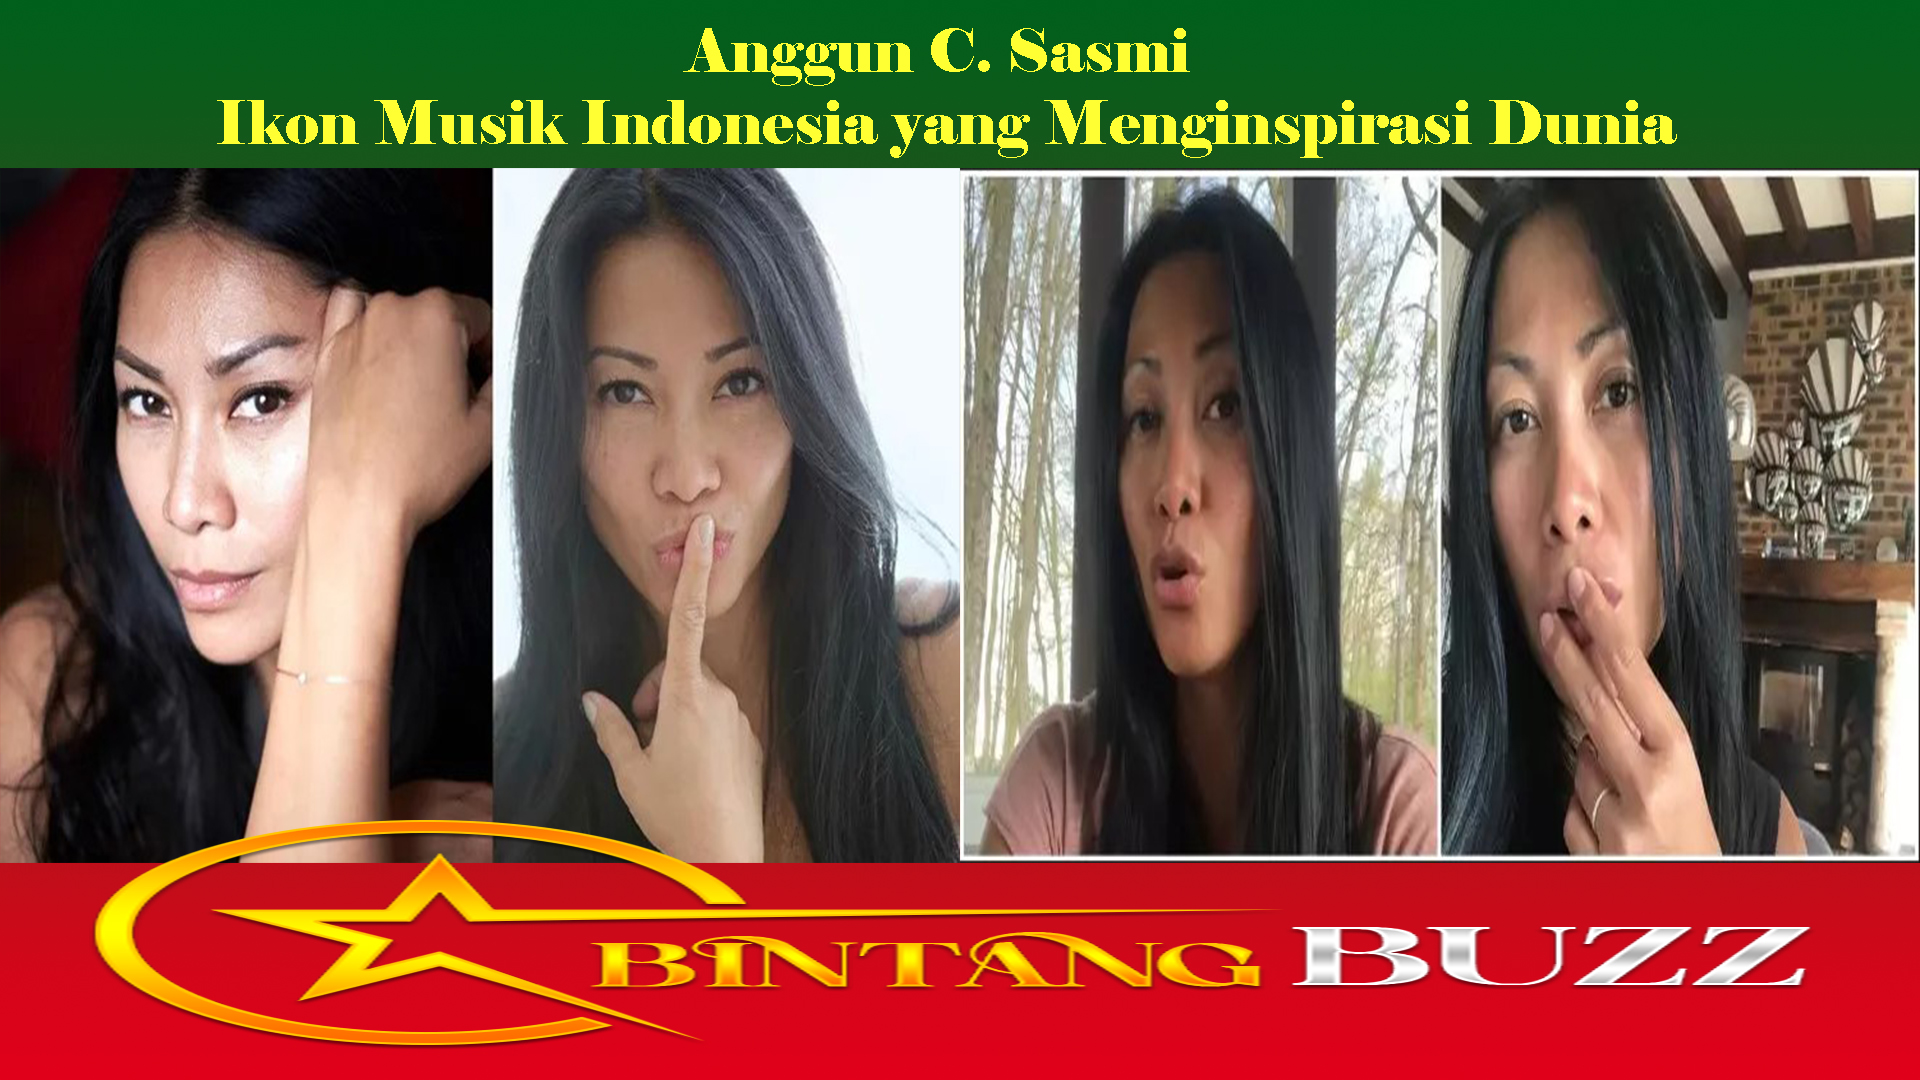 Anggun C. Sasmi Ikon Musik Indonesia yang Menginspirasi Dunia